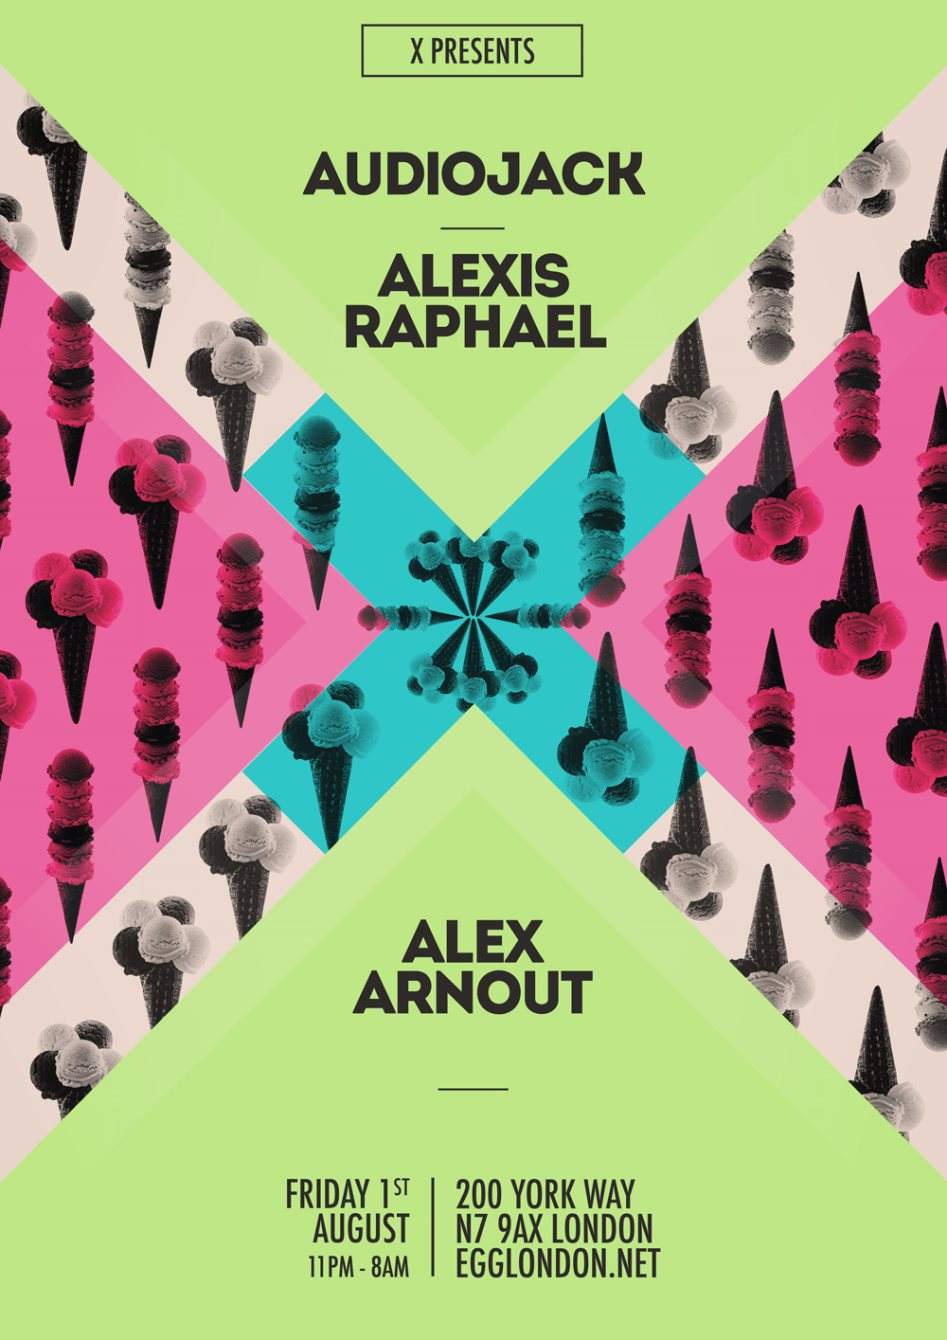 X presents: Audiojack, Alexis Raphael, Alex Arnout - Página frontal